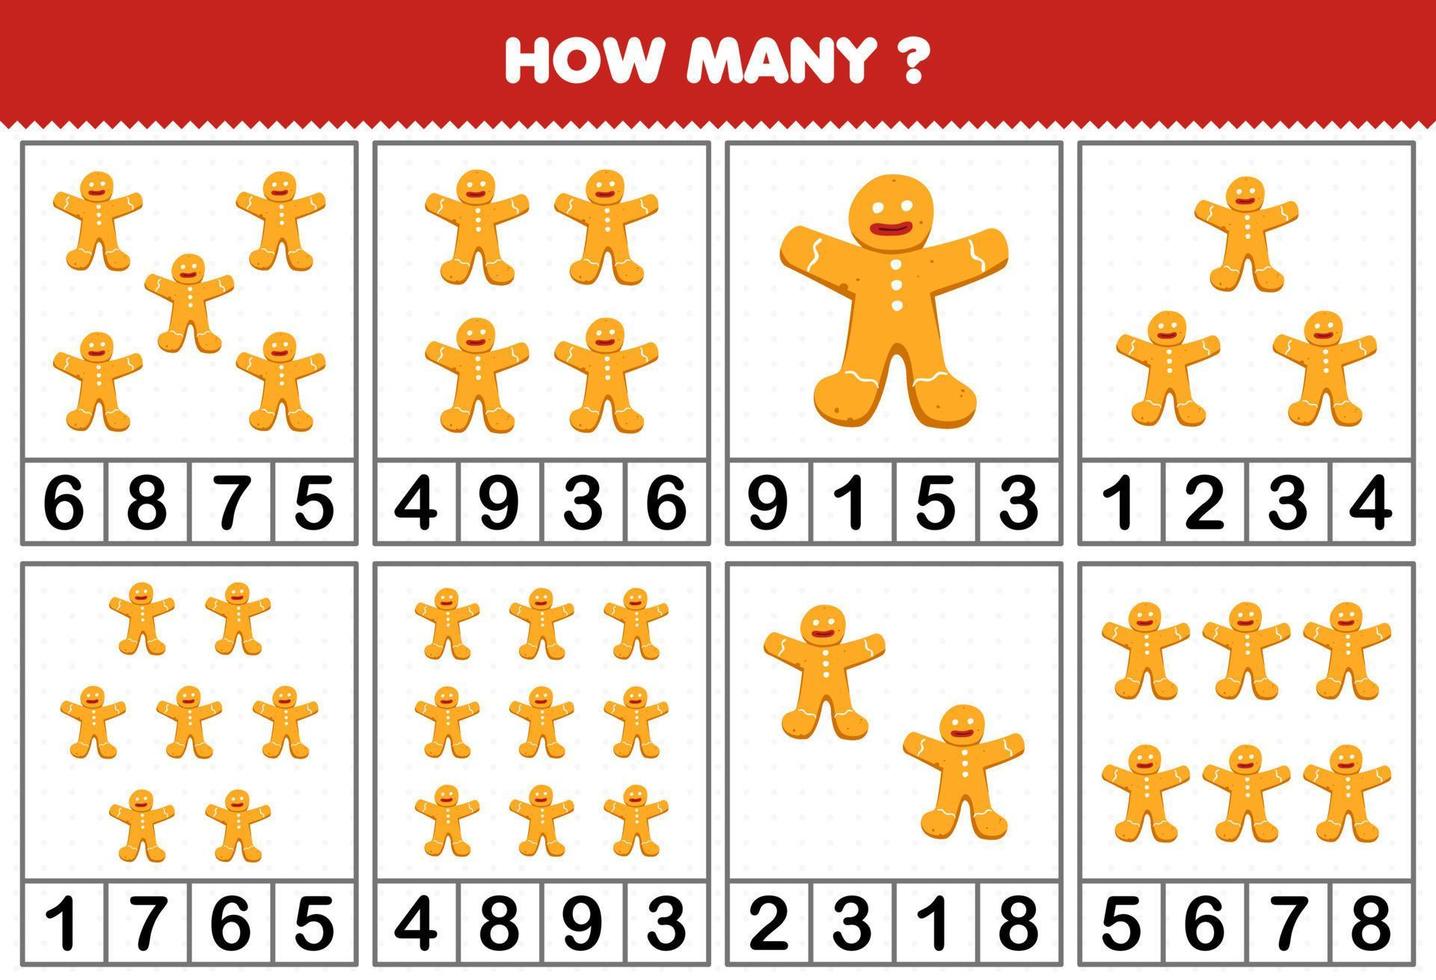 Jogo de educação para crianças contando quantos objetos em cada